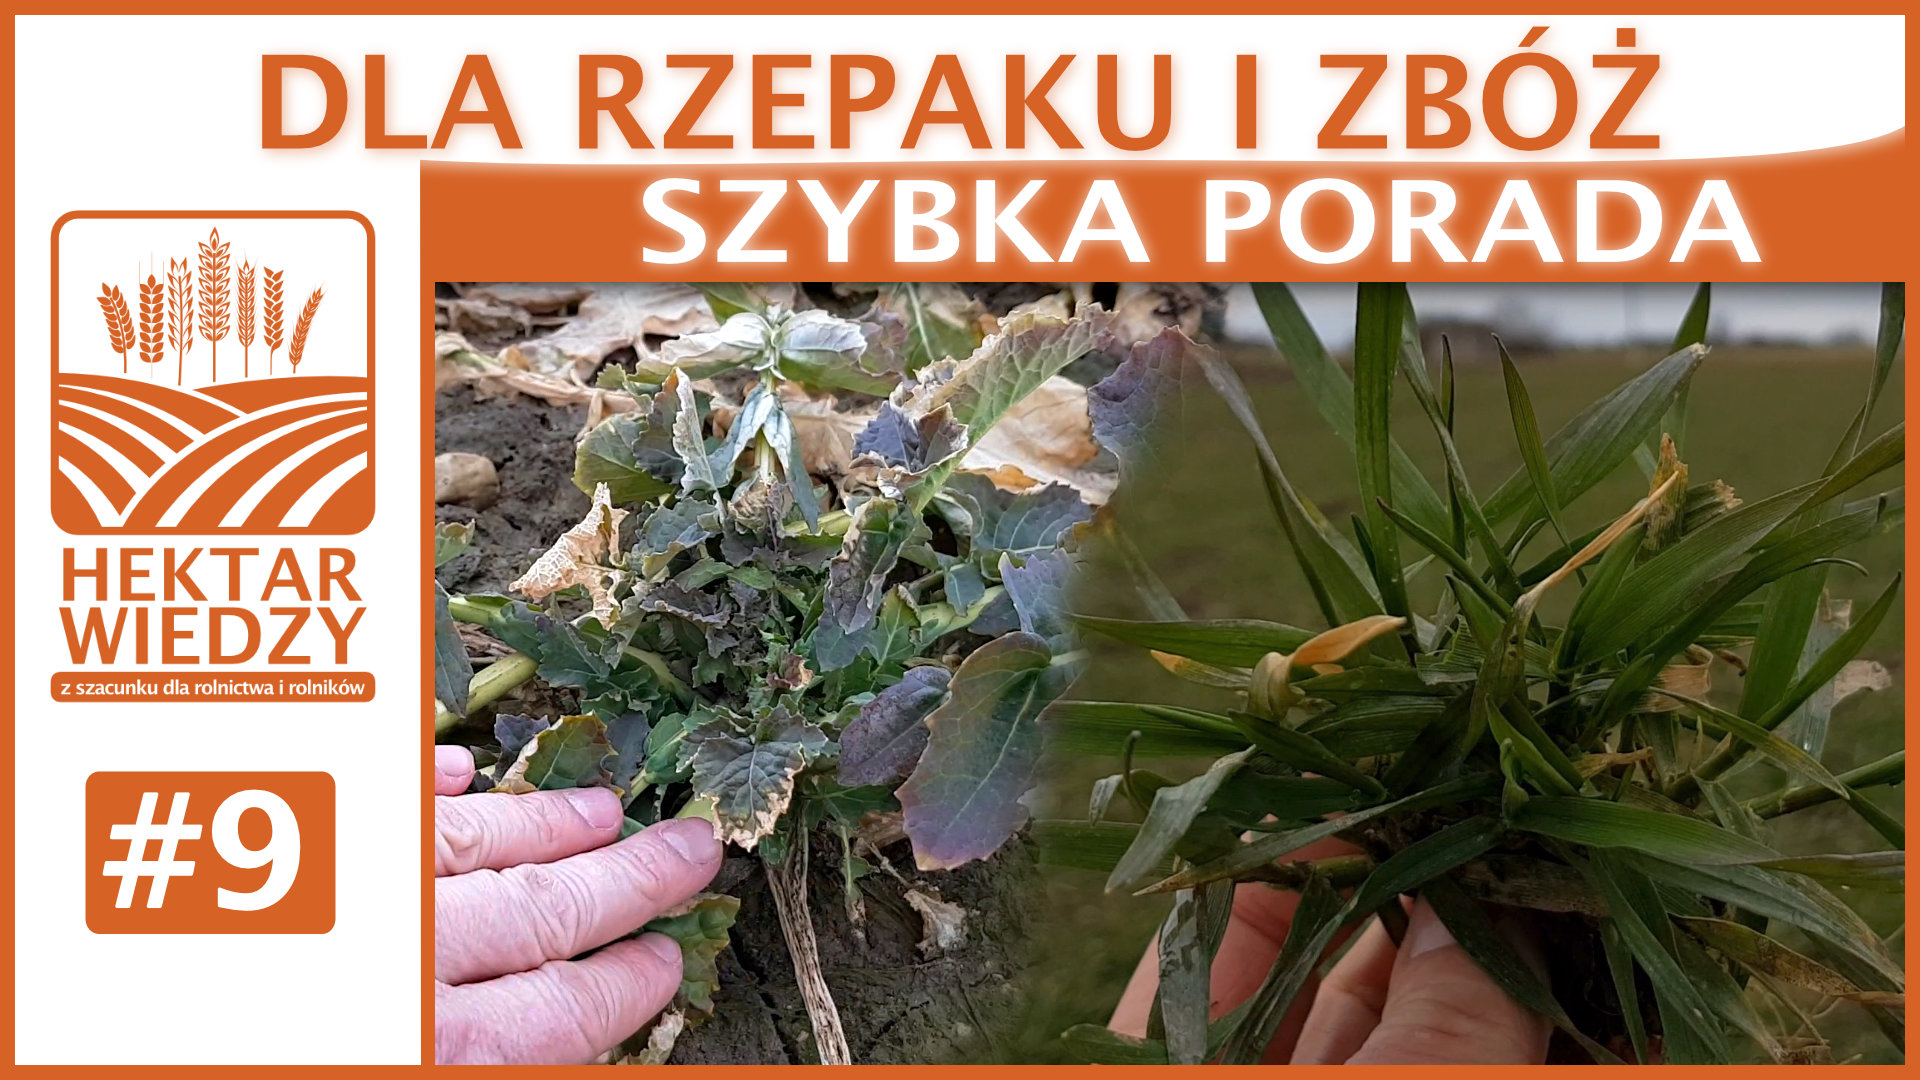 PORTAL_SZYBKA_PORADA_OKLADKA_9